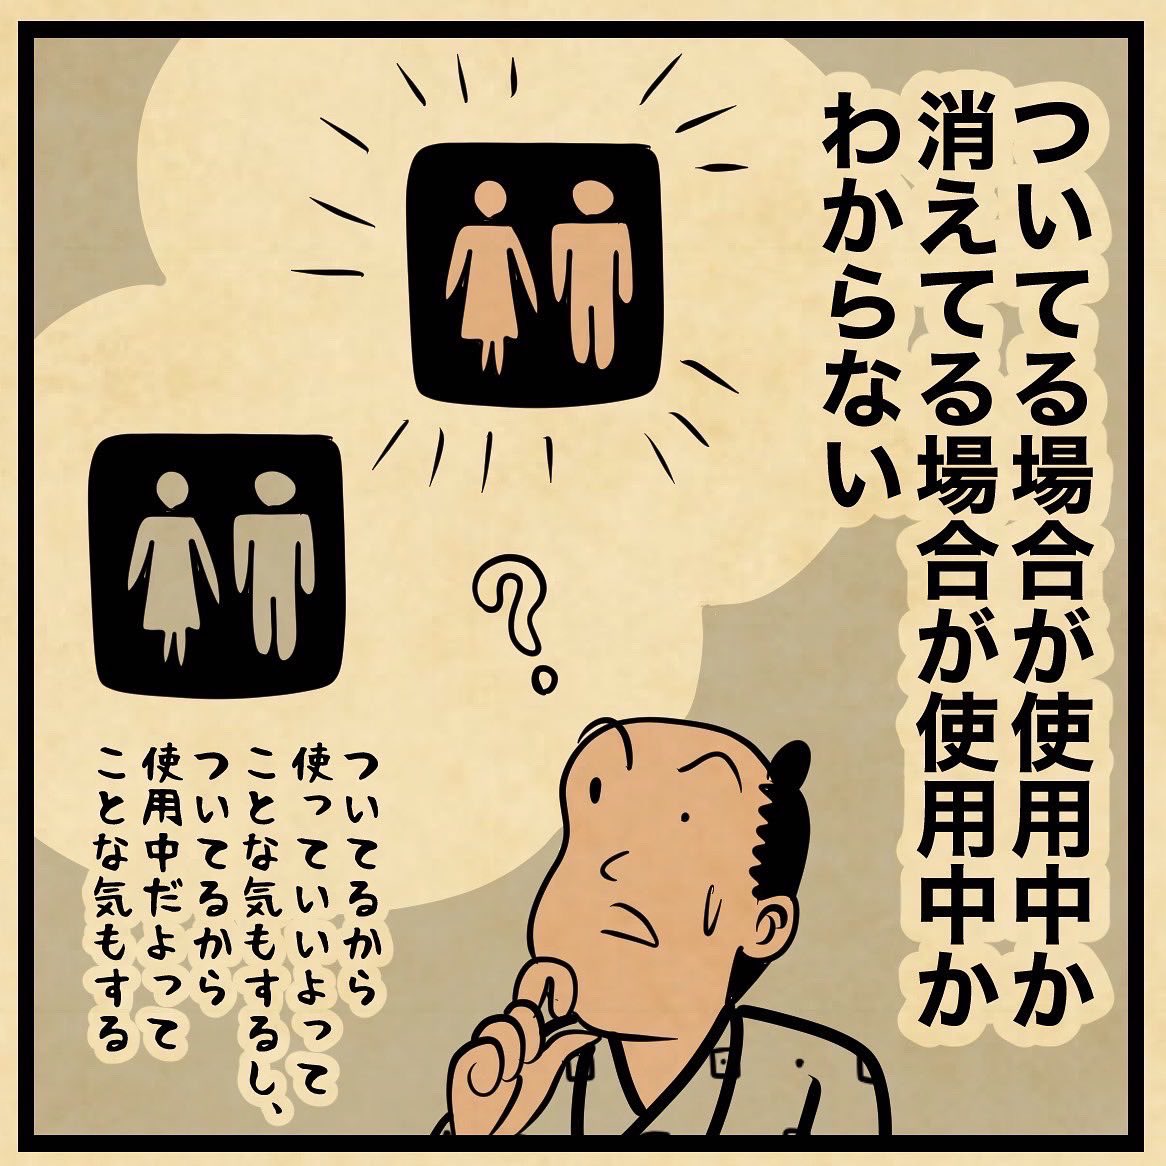 新幹線のトイレの謎 